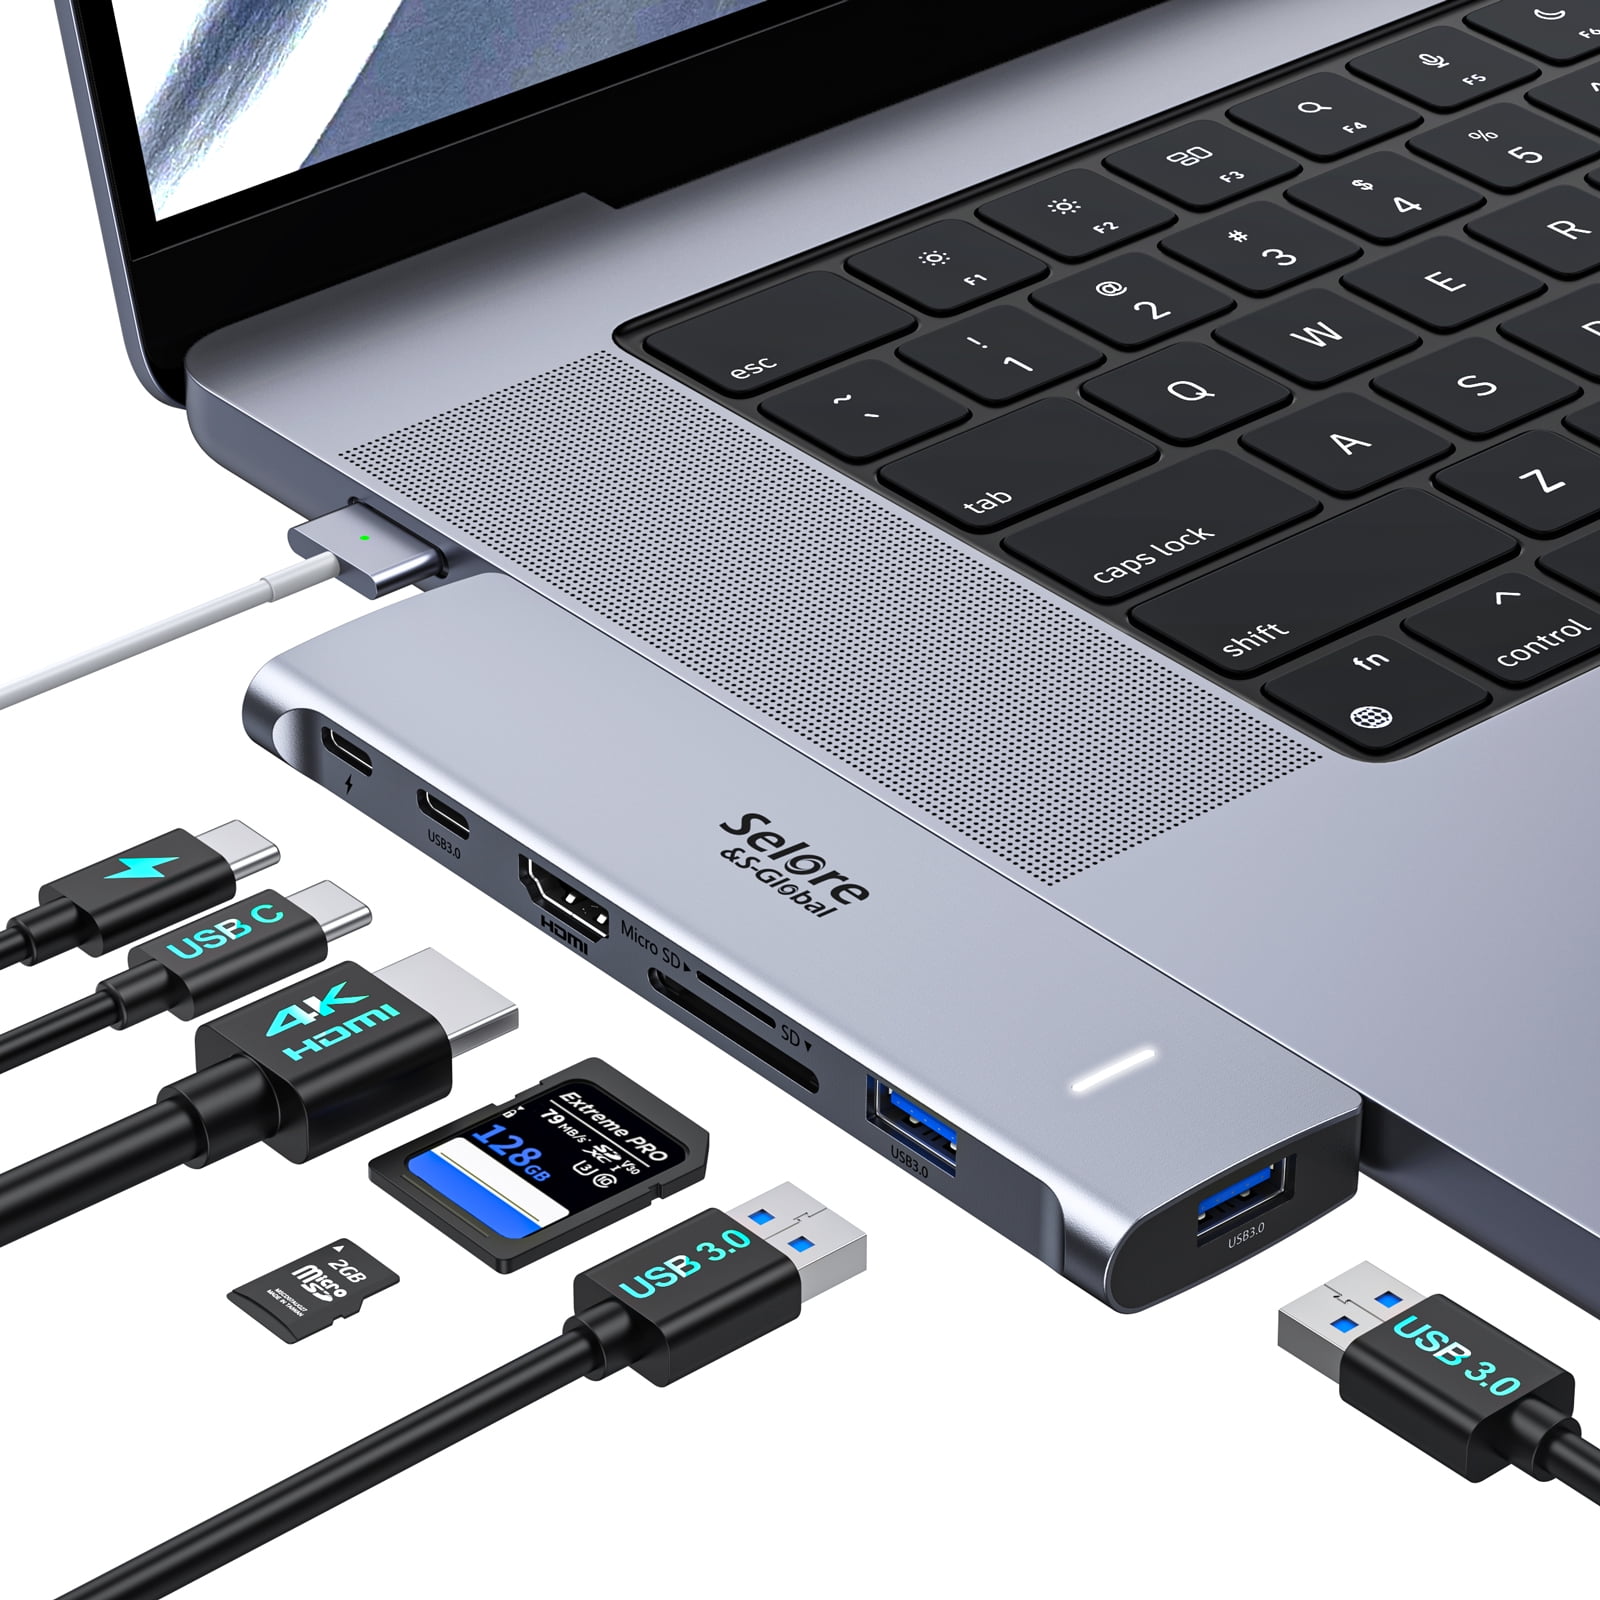  Adaptador USB para MacBook Air/Pro, MacBook Air M1, accesorios  USB 5 en 1, adaptador USB-C a USB con 4 USB 3.0 y Thunderbolt 3 de 100 W  PD, compatible con MacBook